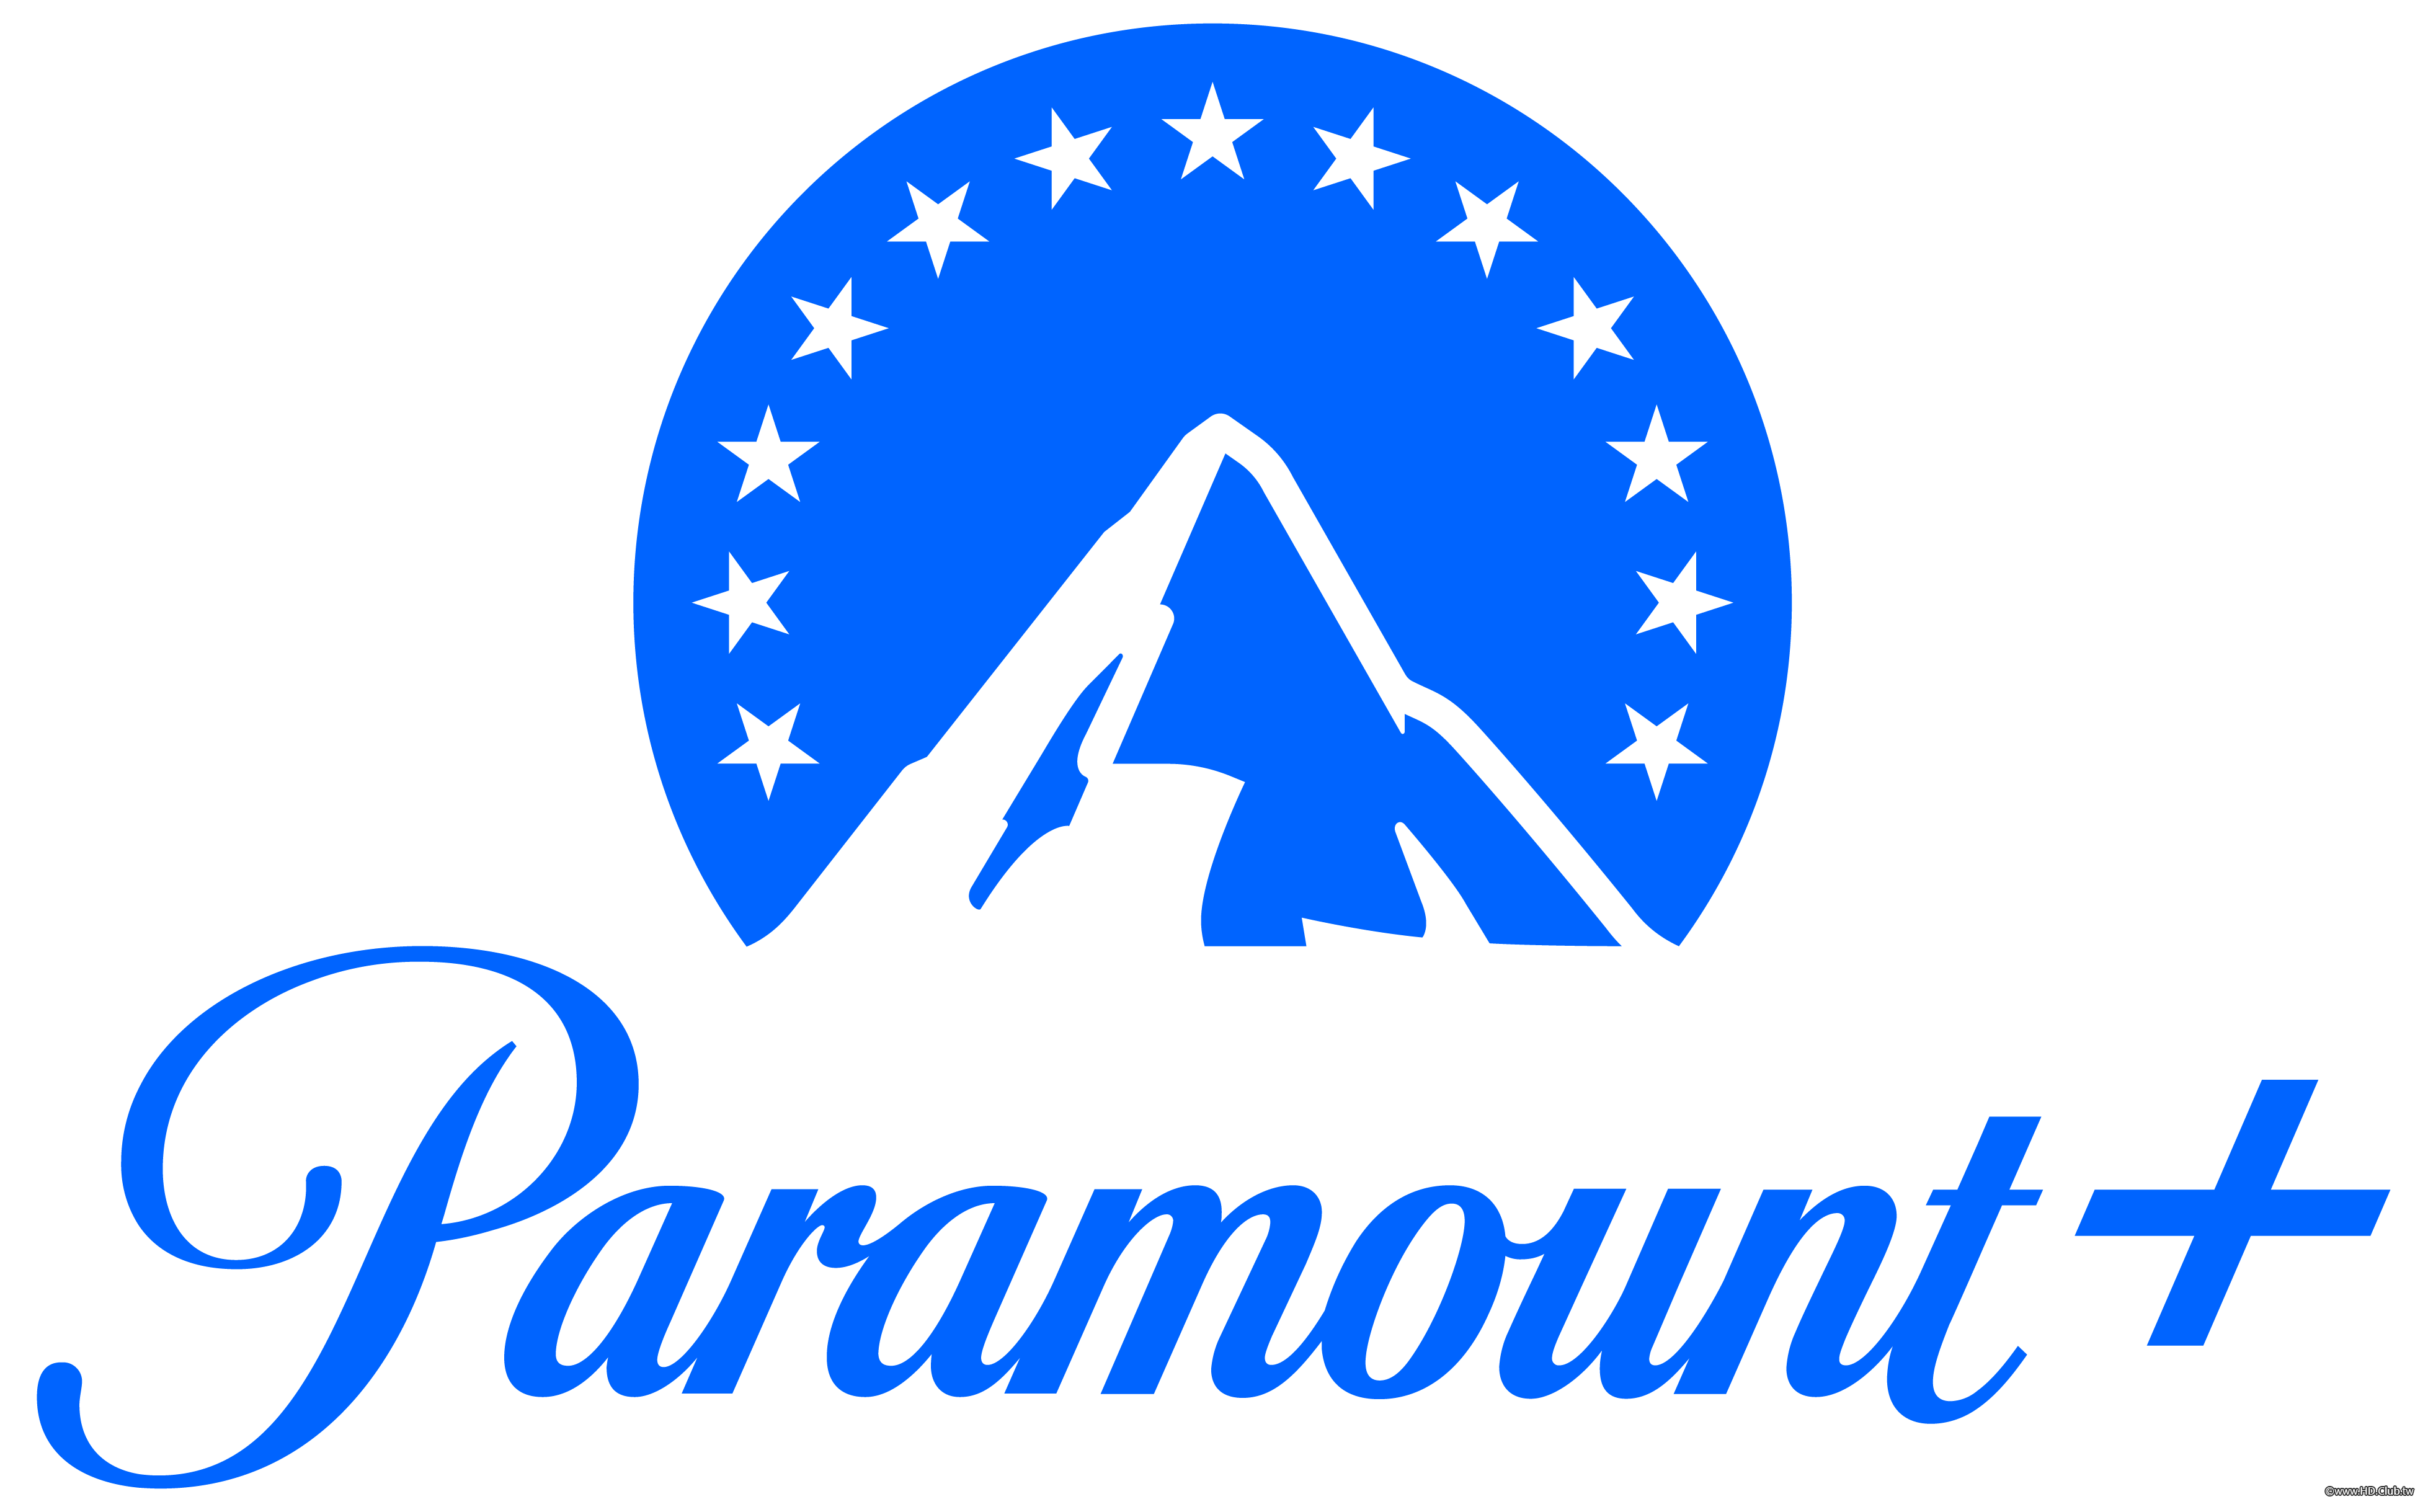 Paramount _logo.png